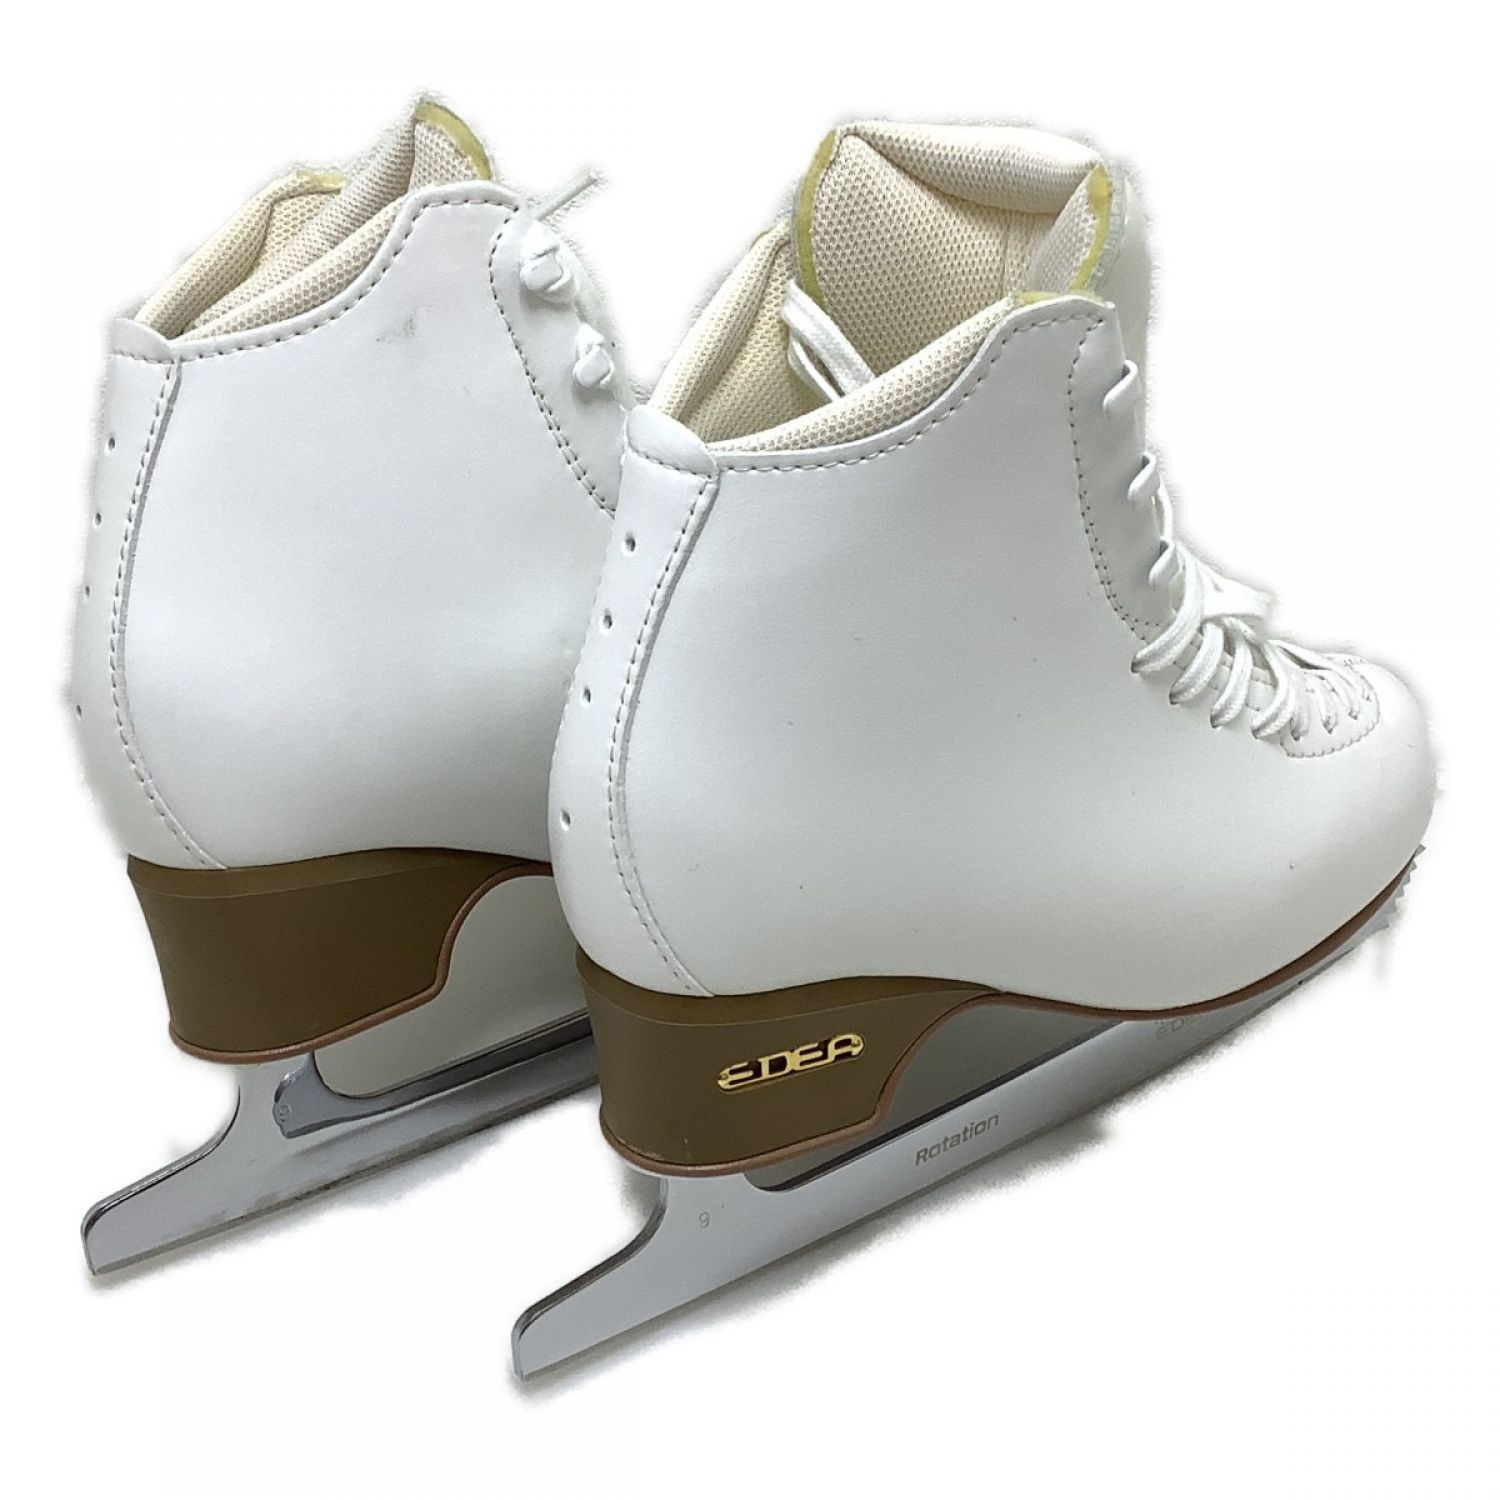 中古】 EDEA フィギュア スケート靴 白 表記サイズ235(22.5